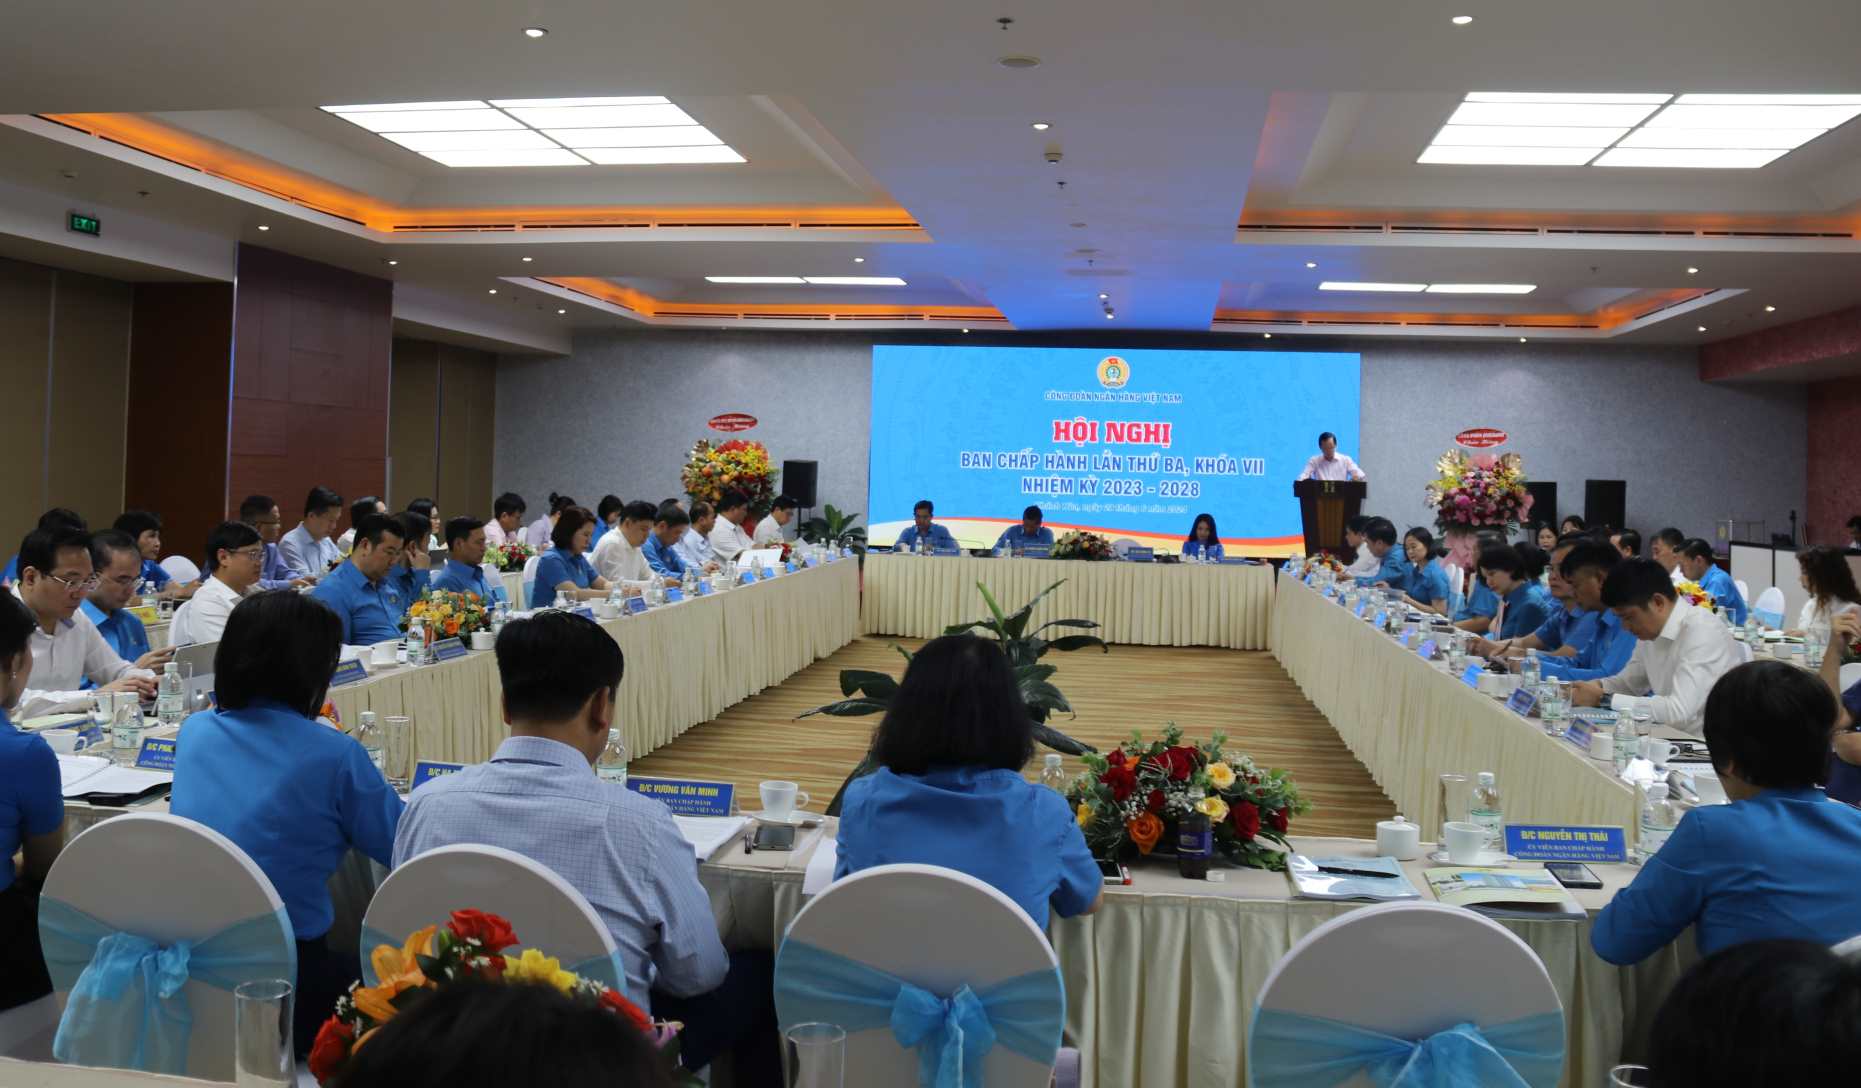 Toàn cảnh hội nghị Ban Chấp hành Công đoàn Ngân hàng Việt Nam lần thứ 3, khóa VII. Ảnh: Phương Linh